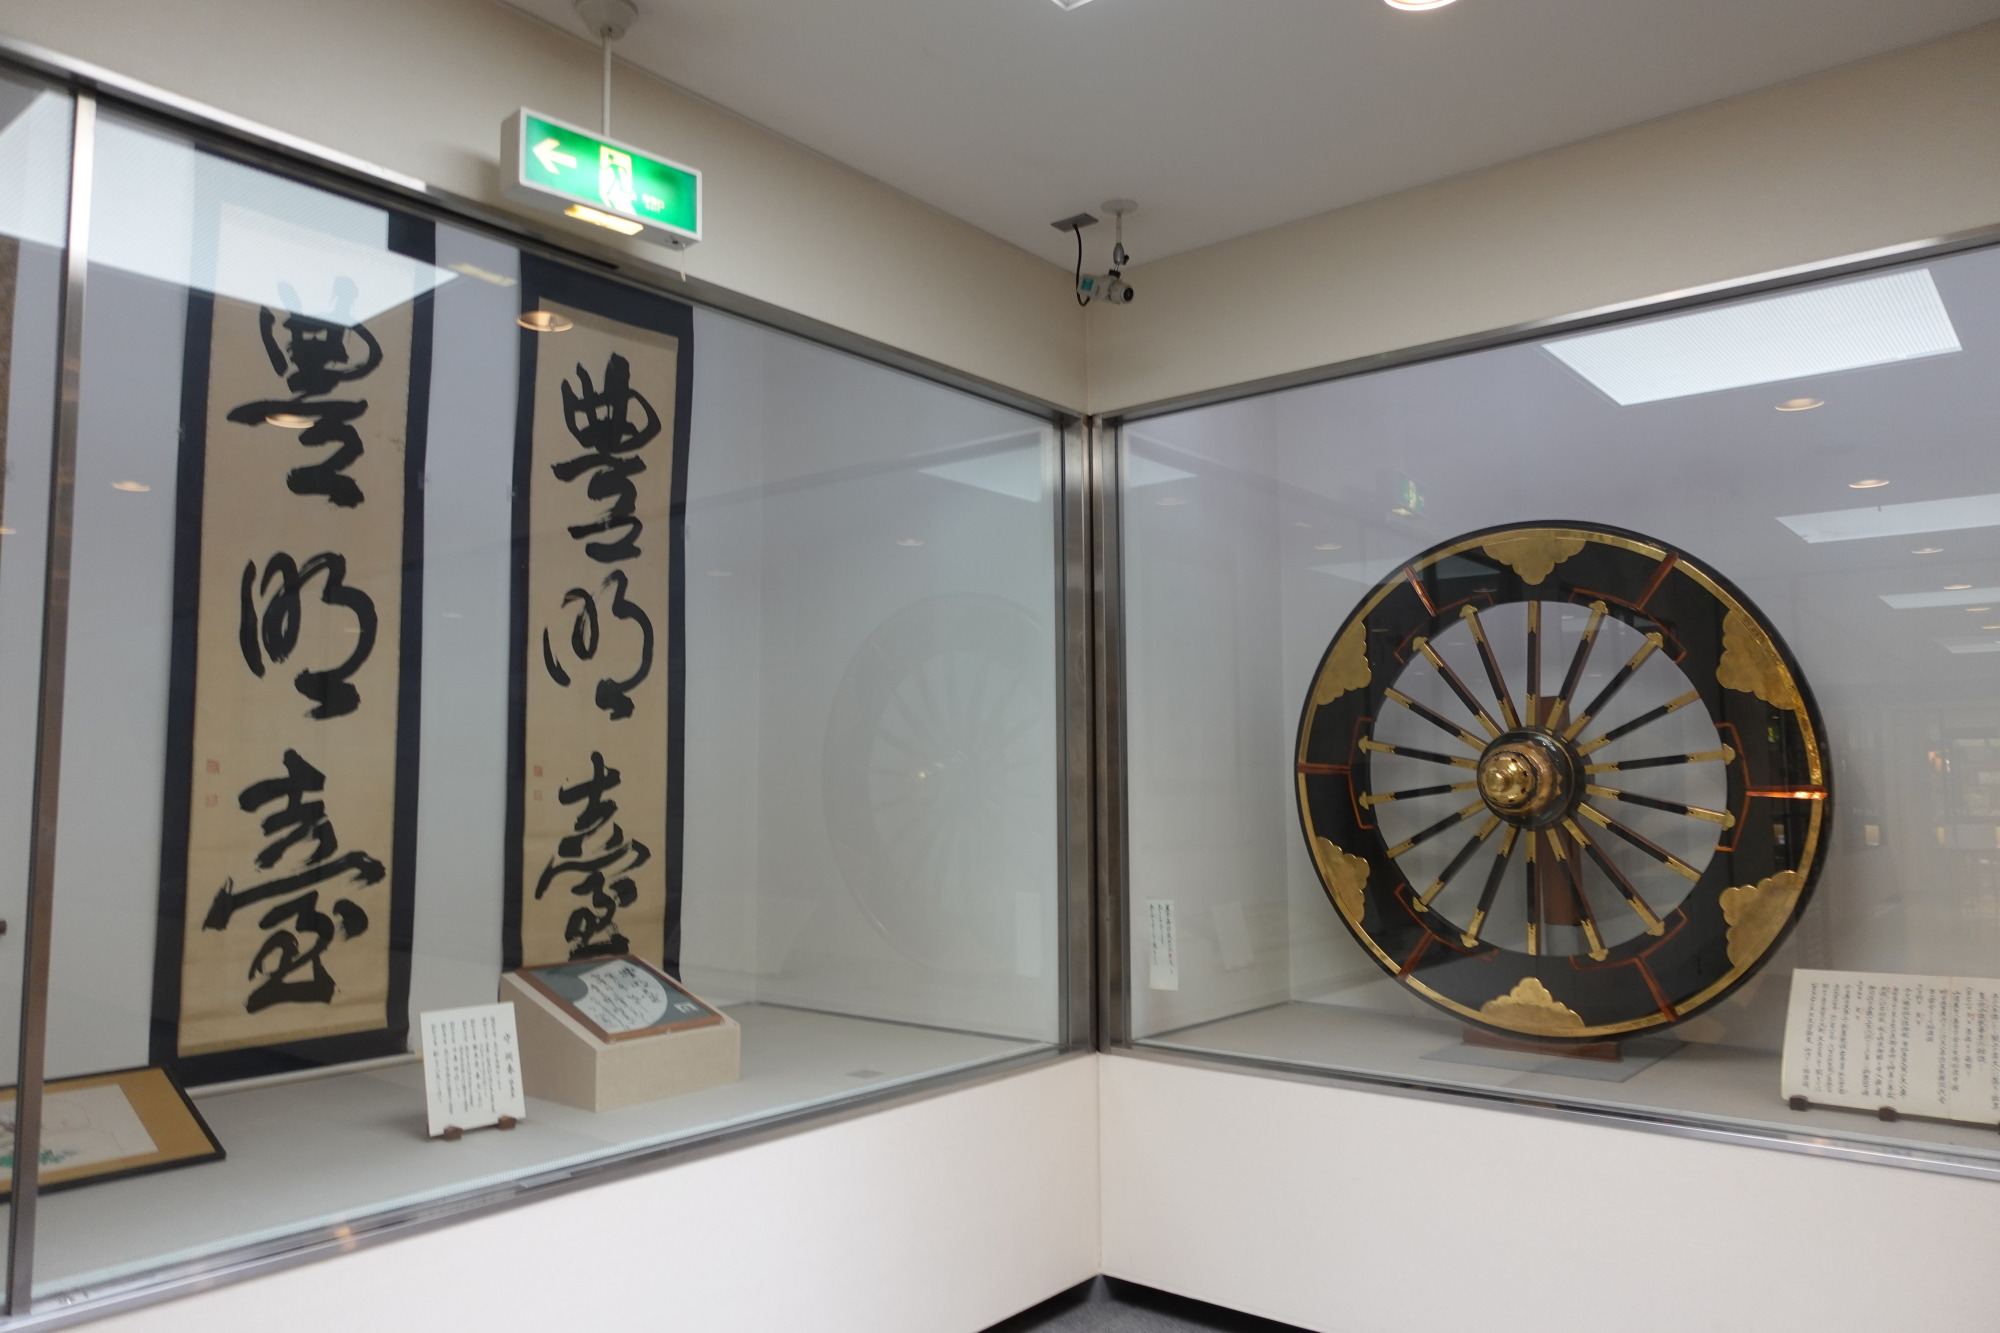 二階の資料展示室には、高山祭に関する資料が展示されています。江戸時代の飛騨の彫刻家で屋台の彫刻を手がけた谷口与鹿に関する資料もありました。